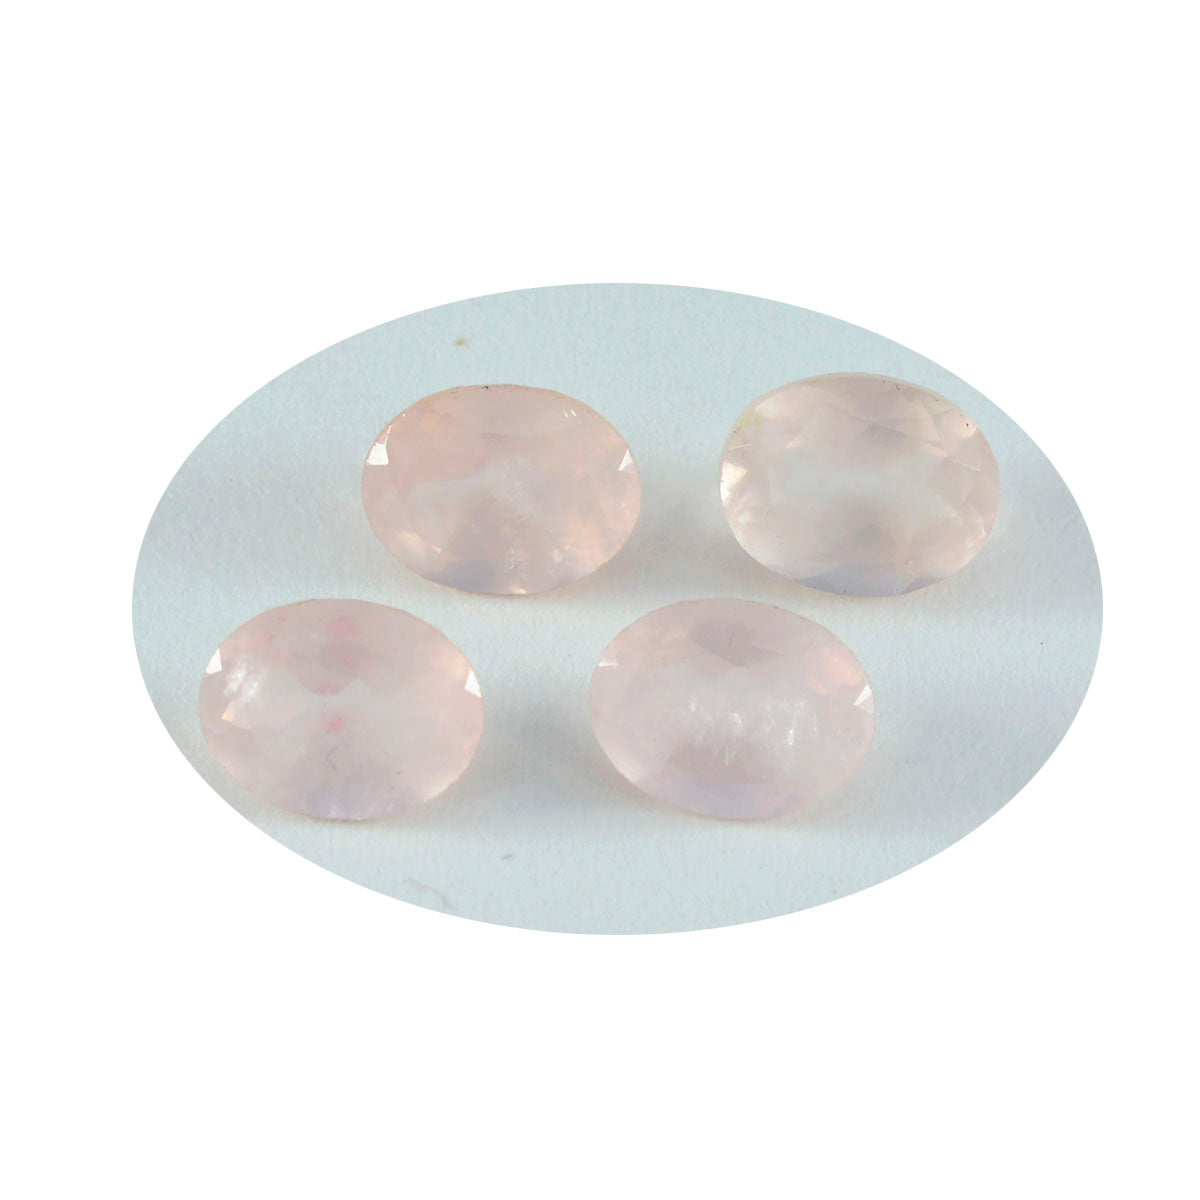 Riyogems, 1 pieza, cuarzo rosa facetado, 10x14mm, forma ovalada, piedra suelta de calidad fantástica